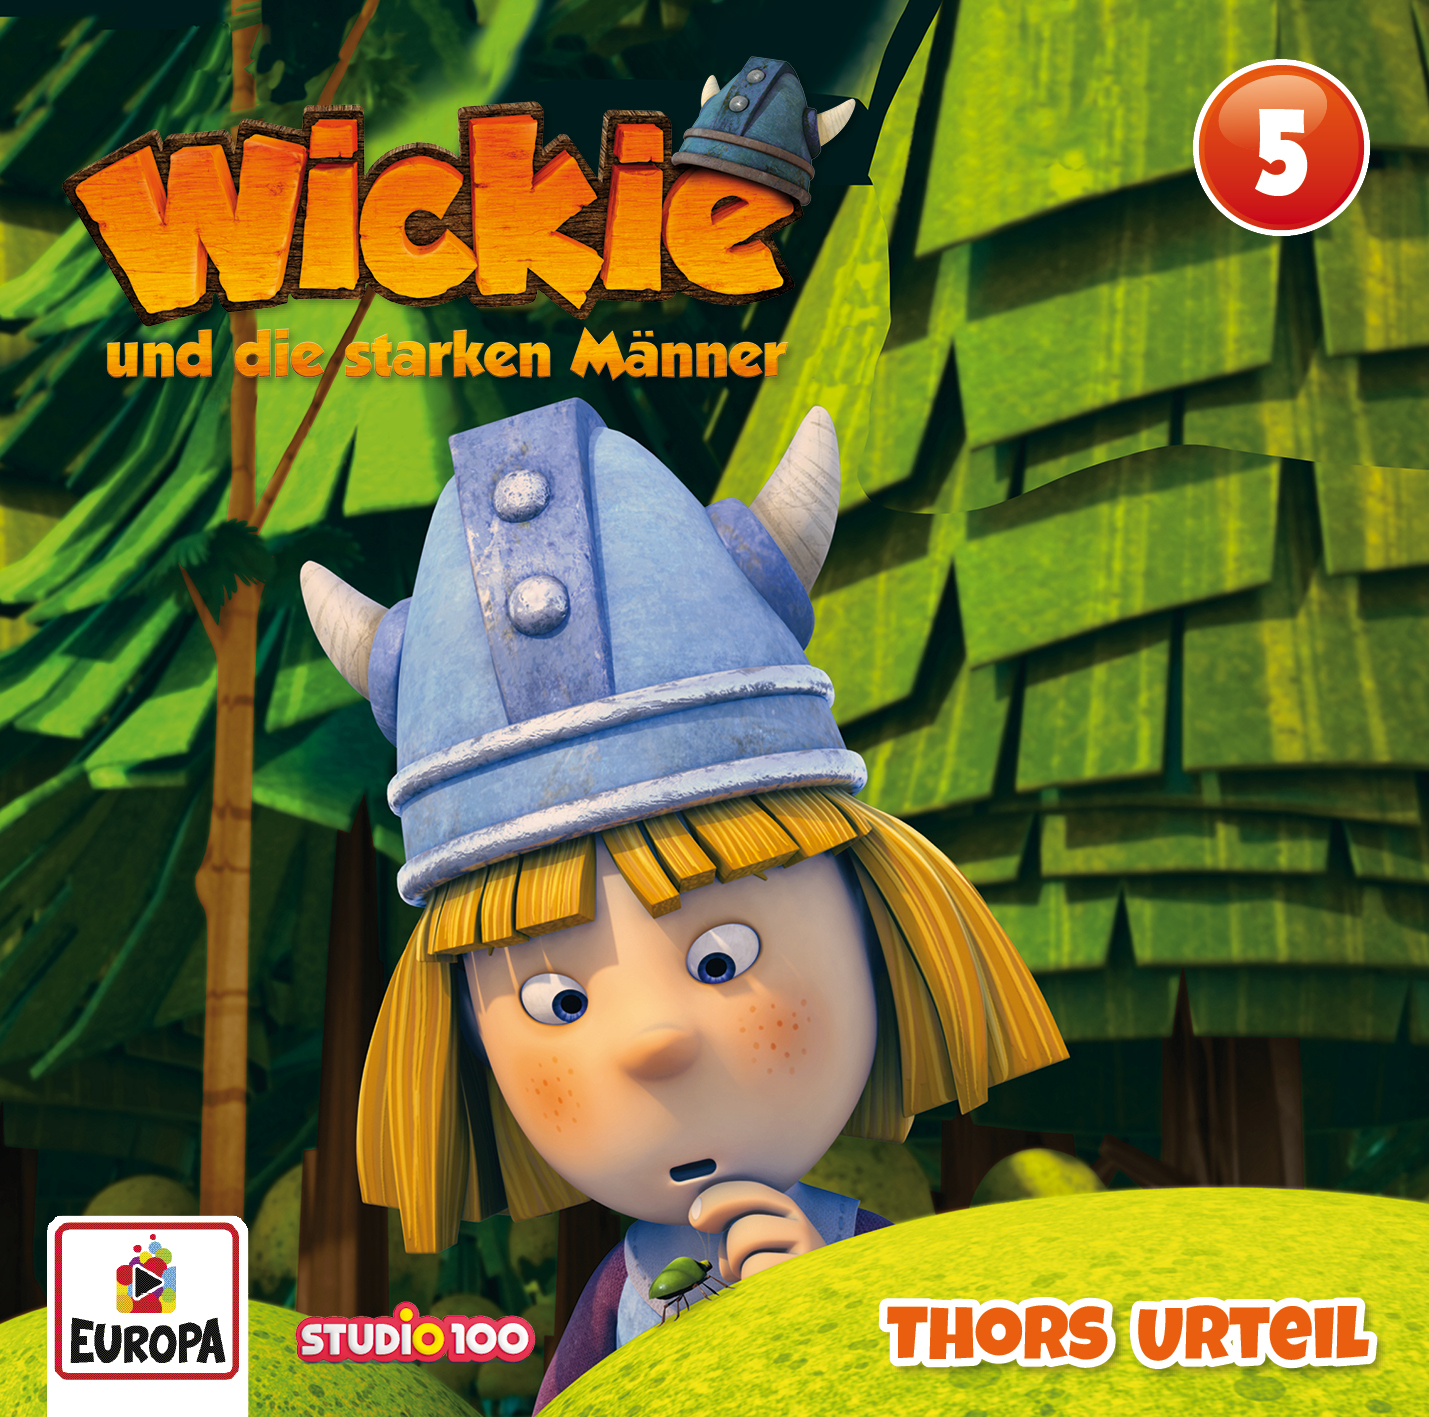 Wickie - Thors Urteil (CGI)